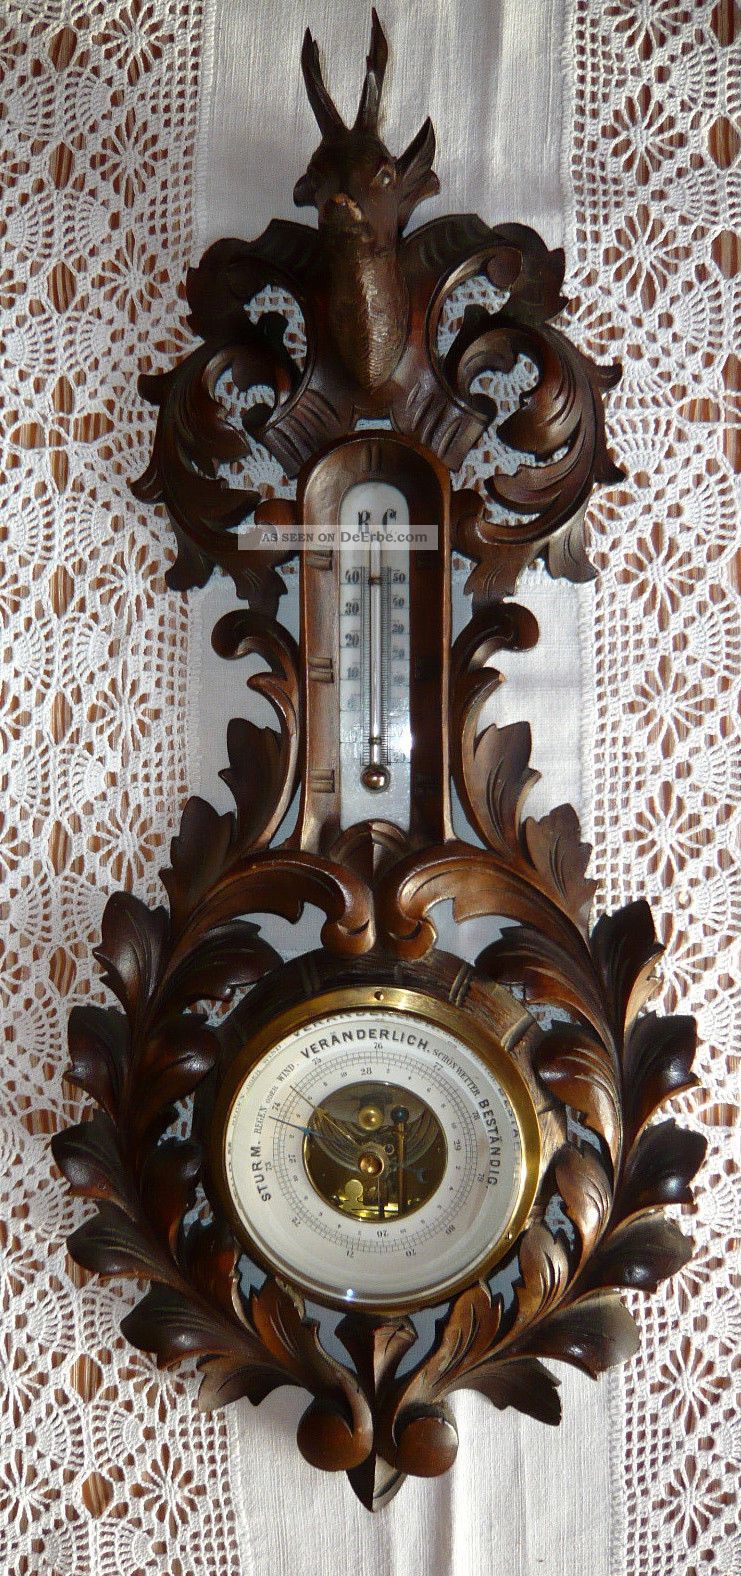 Antikes Barometer Mit Thermometer Aus Dunklem Holz - Um 1920 - Funktionstüchtig Wettergeräte Bild